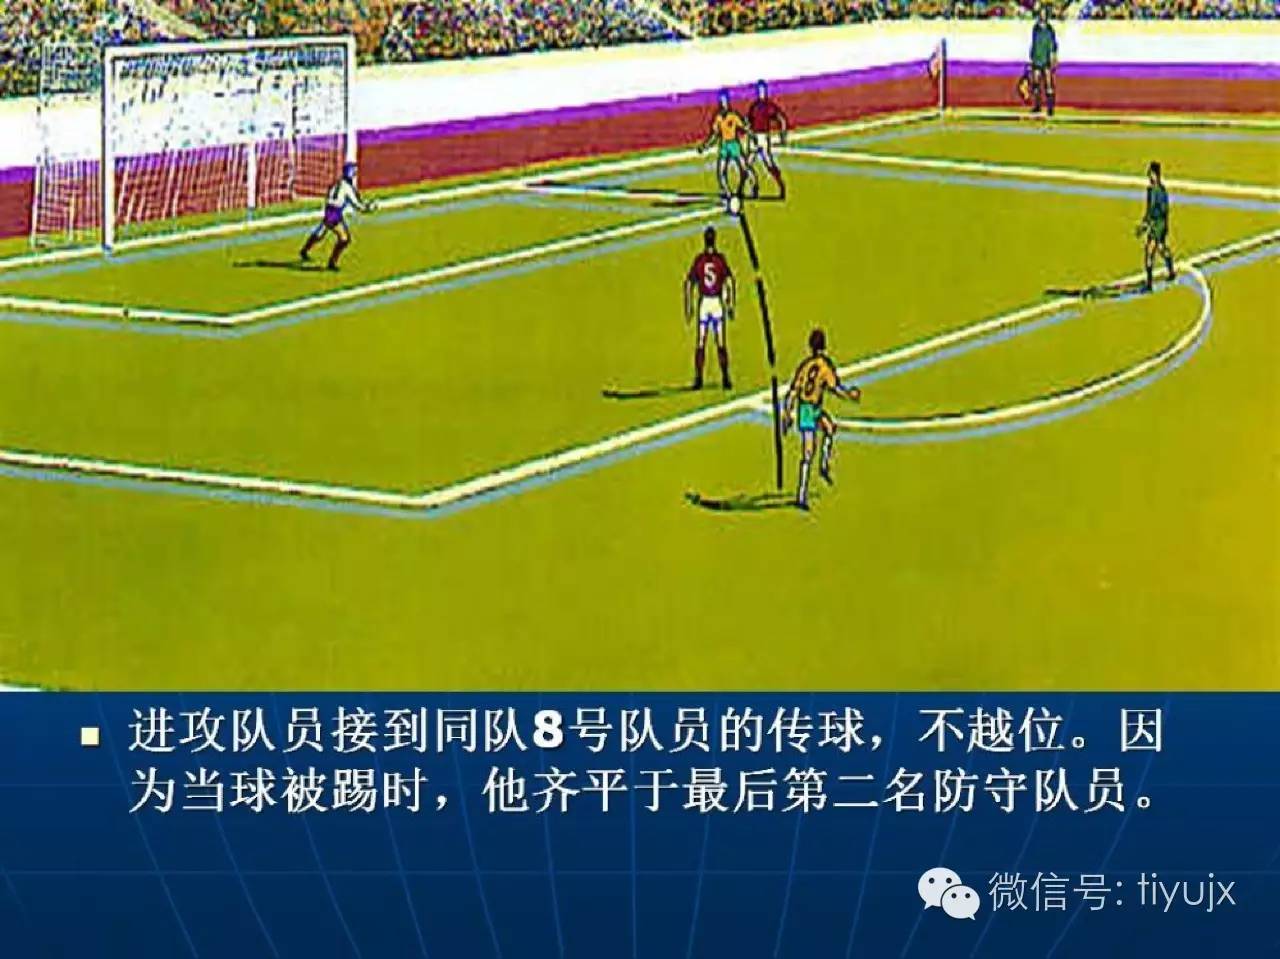 足球项目的起源到中国古代的球类游戏蹴鞠鞠